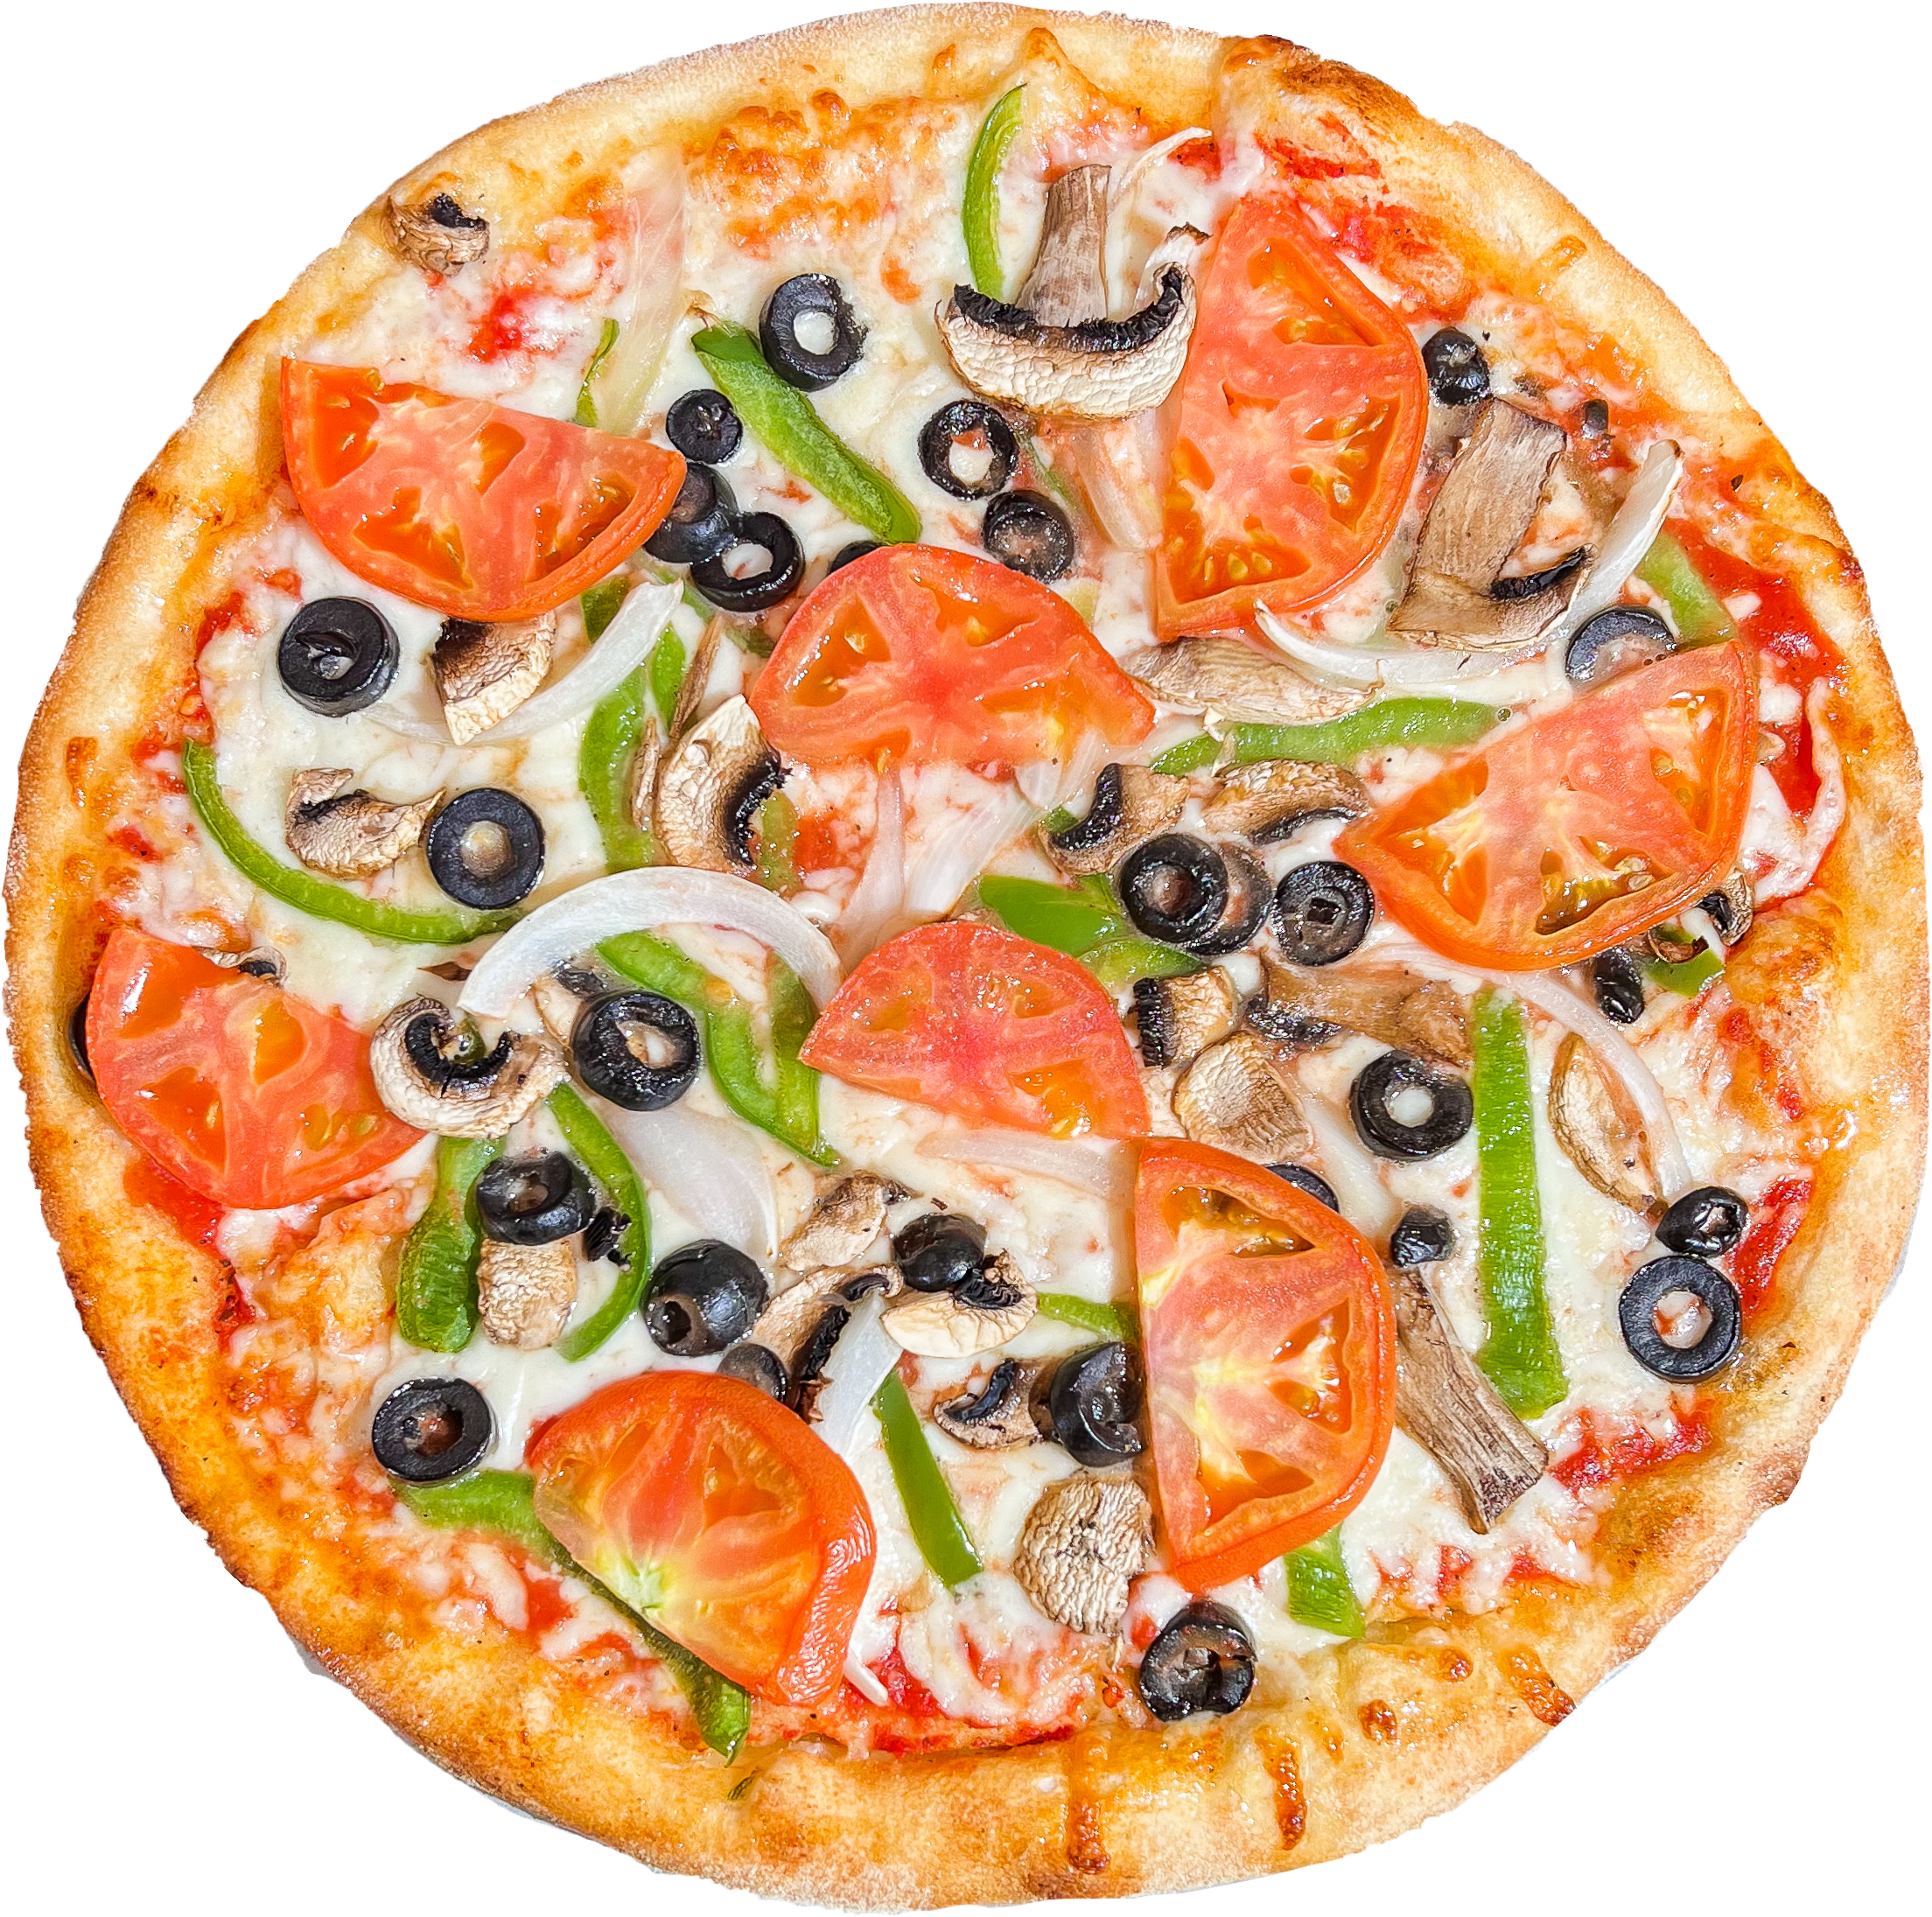 Veggie Lover's Pizza S $18.95 L $20.95 XL $24.95